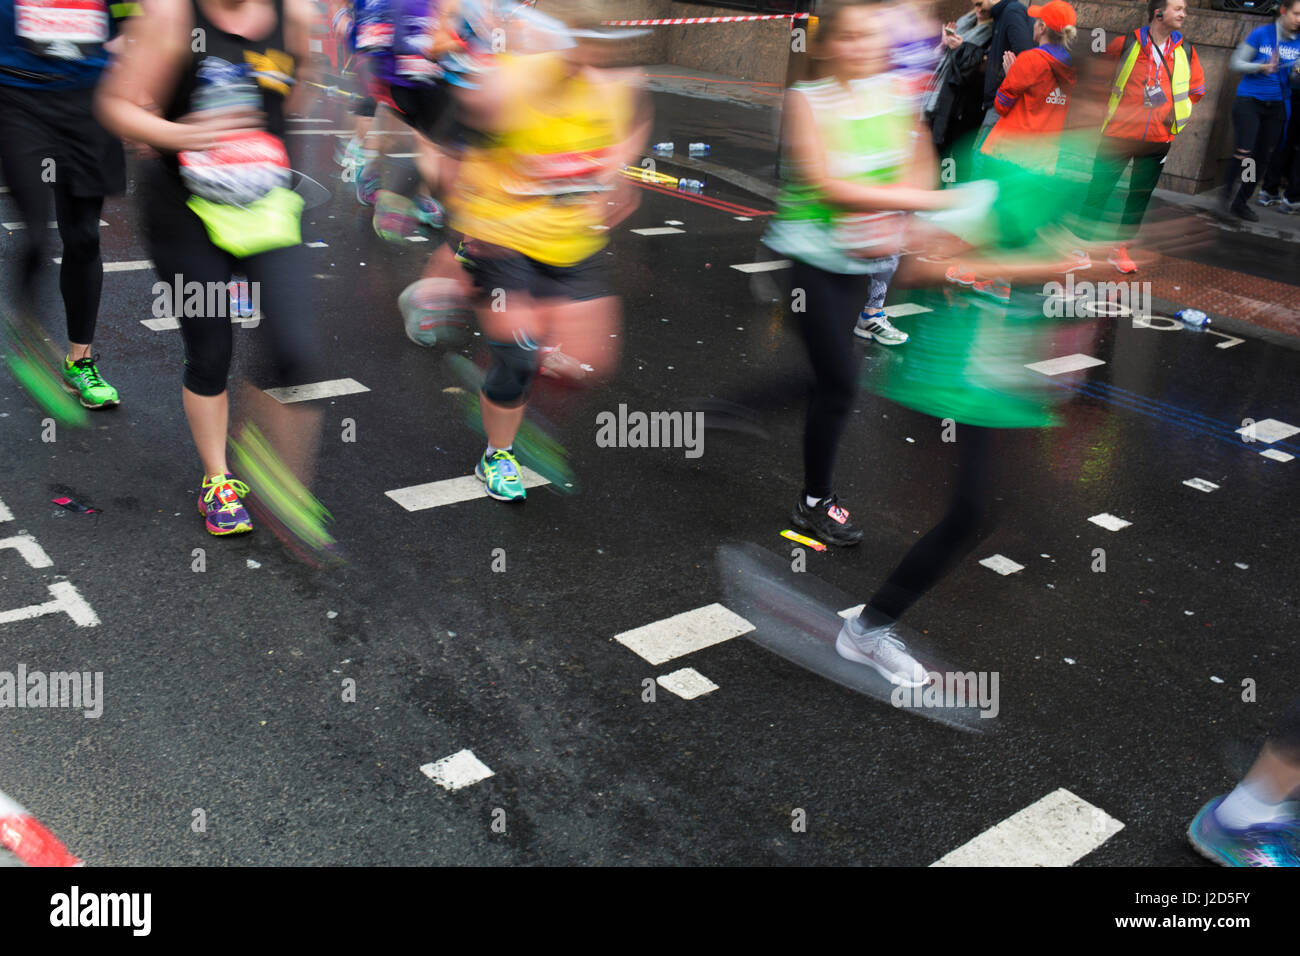 Teilnehmer in den London-Marathon laufen etwa vier Meilen zu gehen, die Strecke am 23. April 2017 in London, England, Vereinigtes Königreich zu absolvieren. Stockfoto